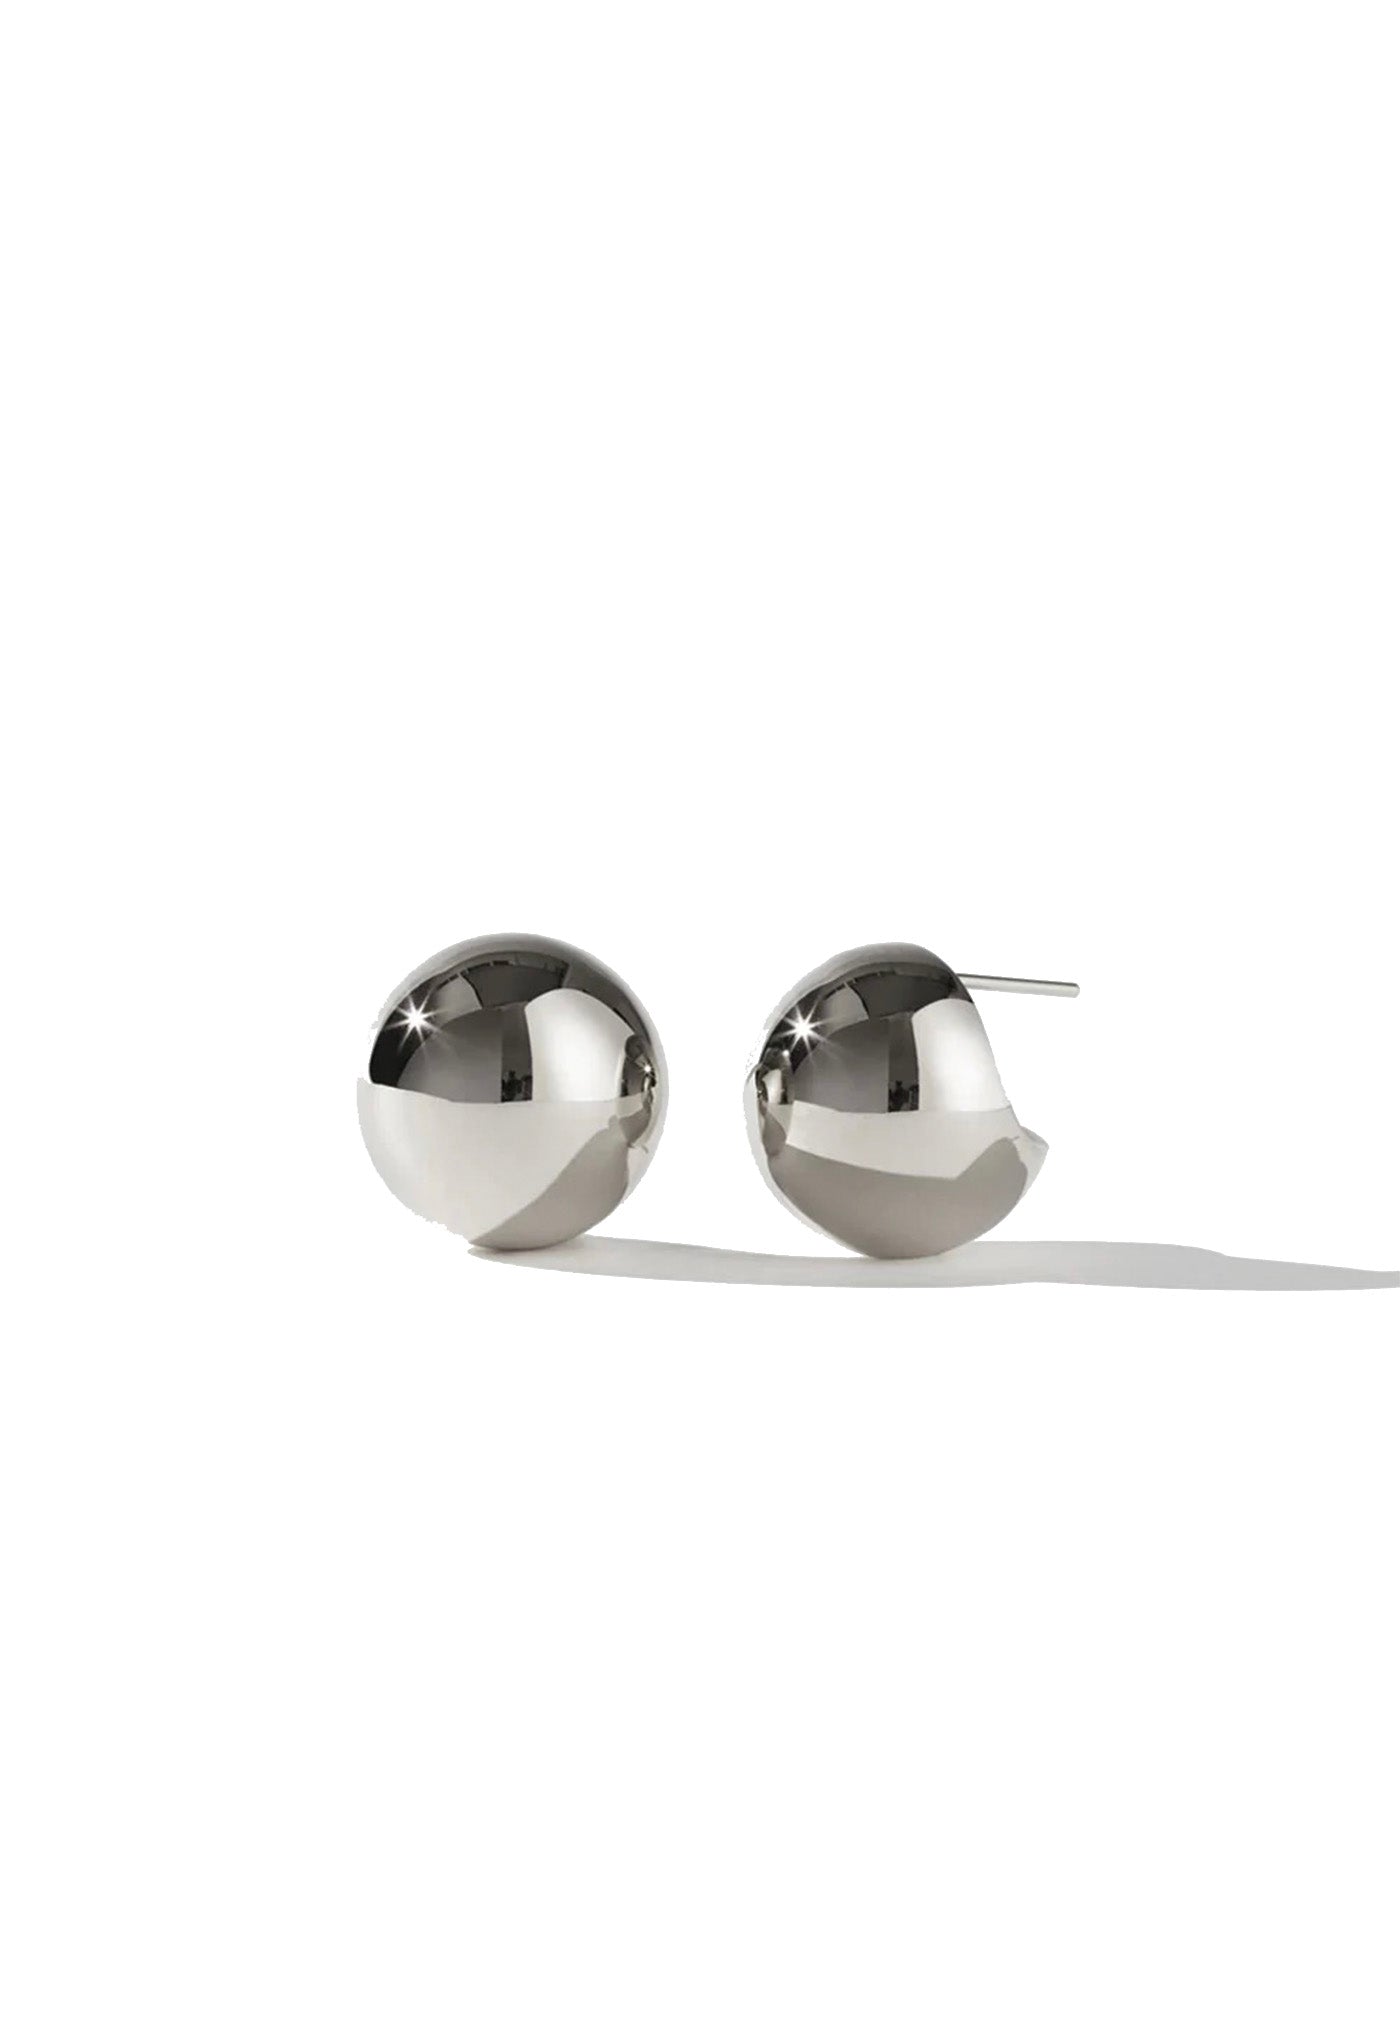 Orb Earrings Medium sold by Angel Divine